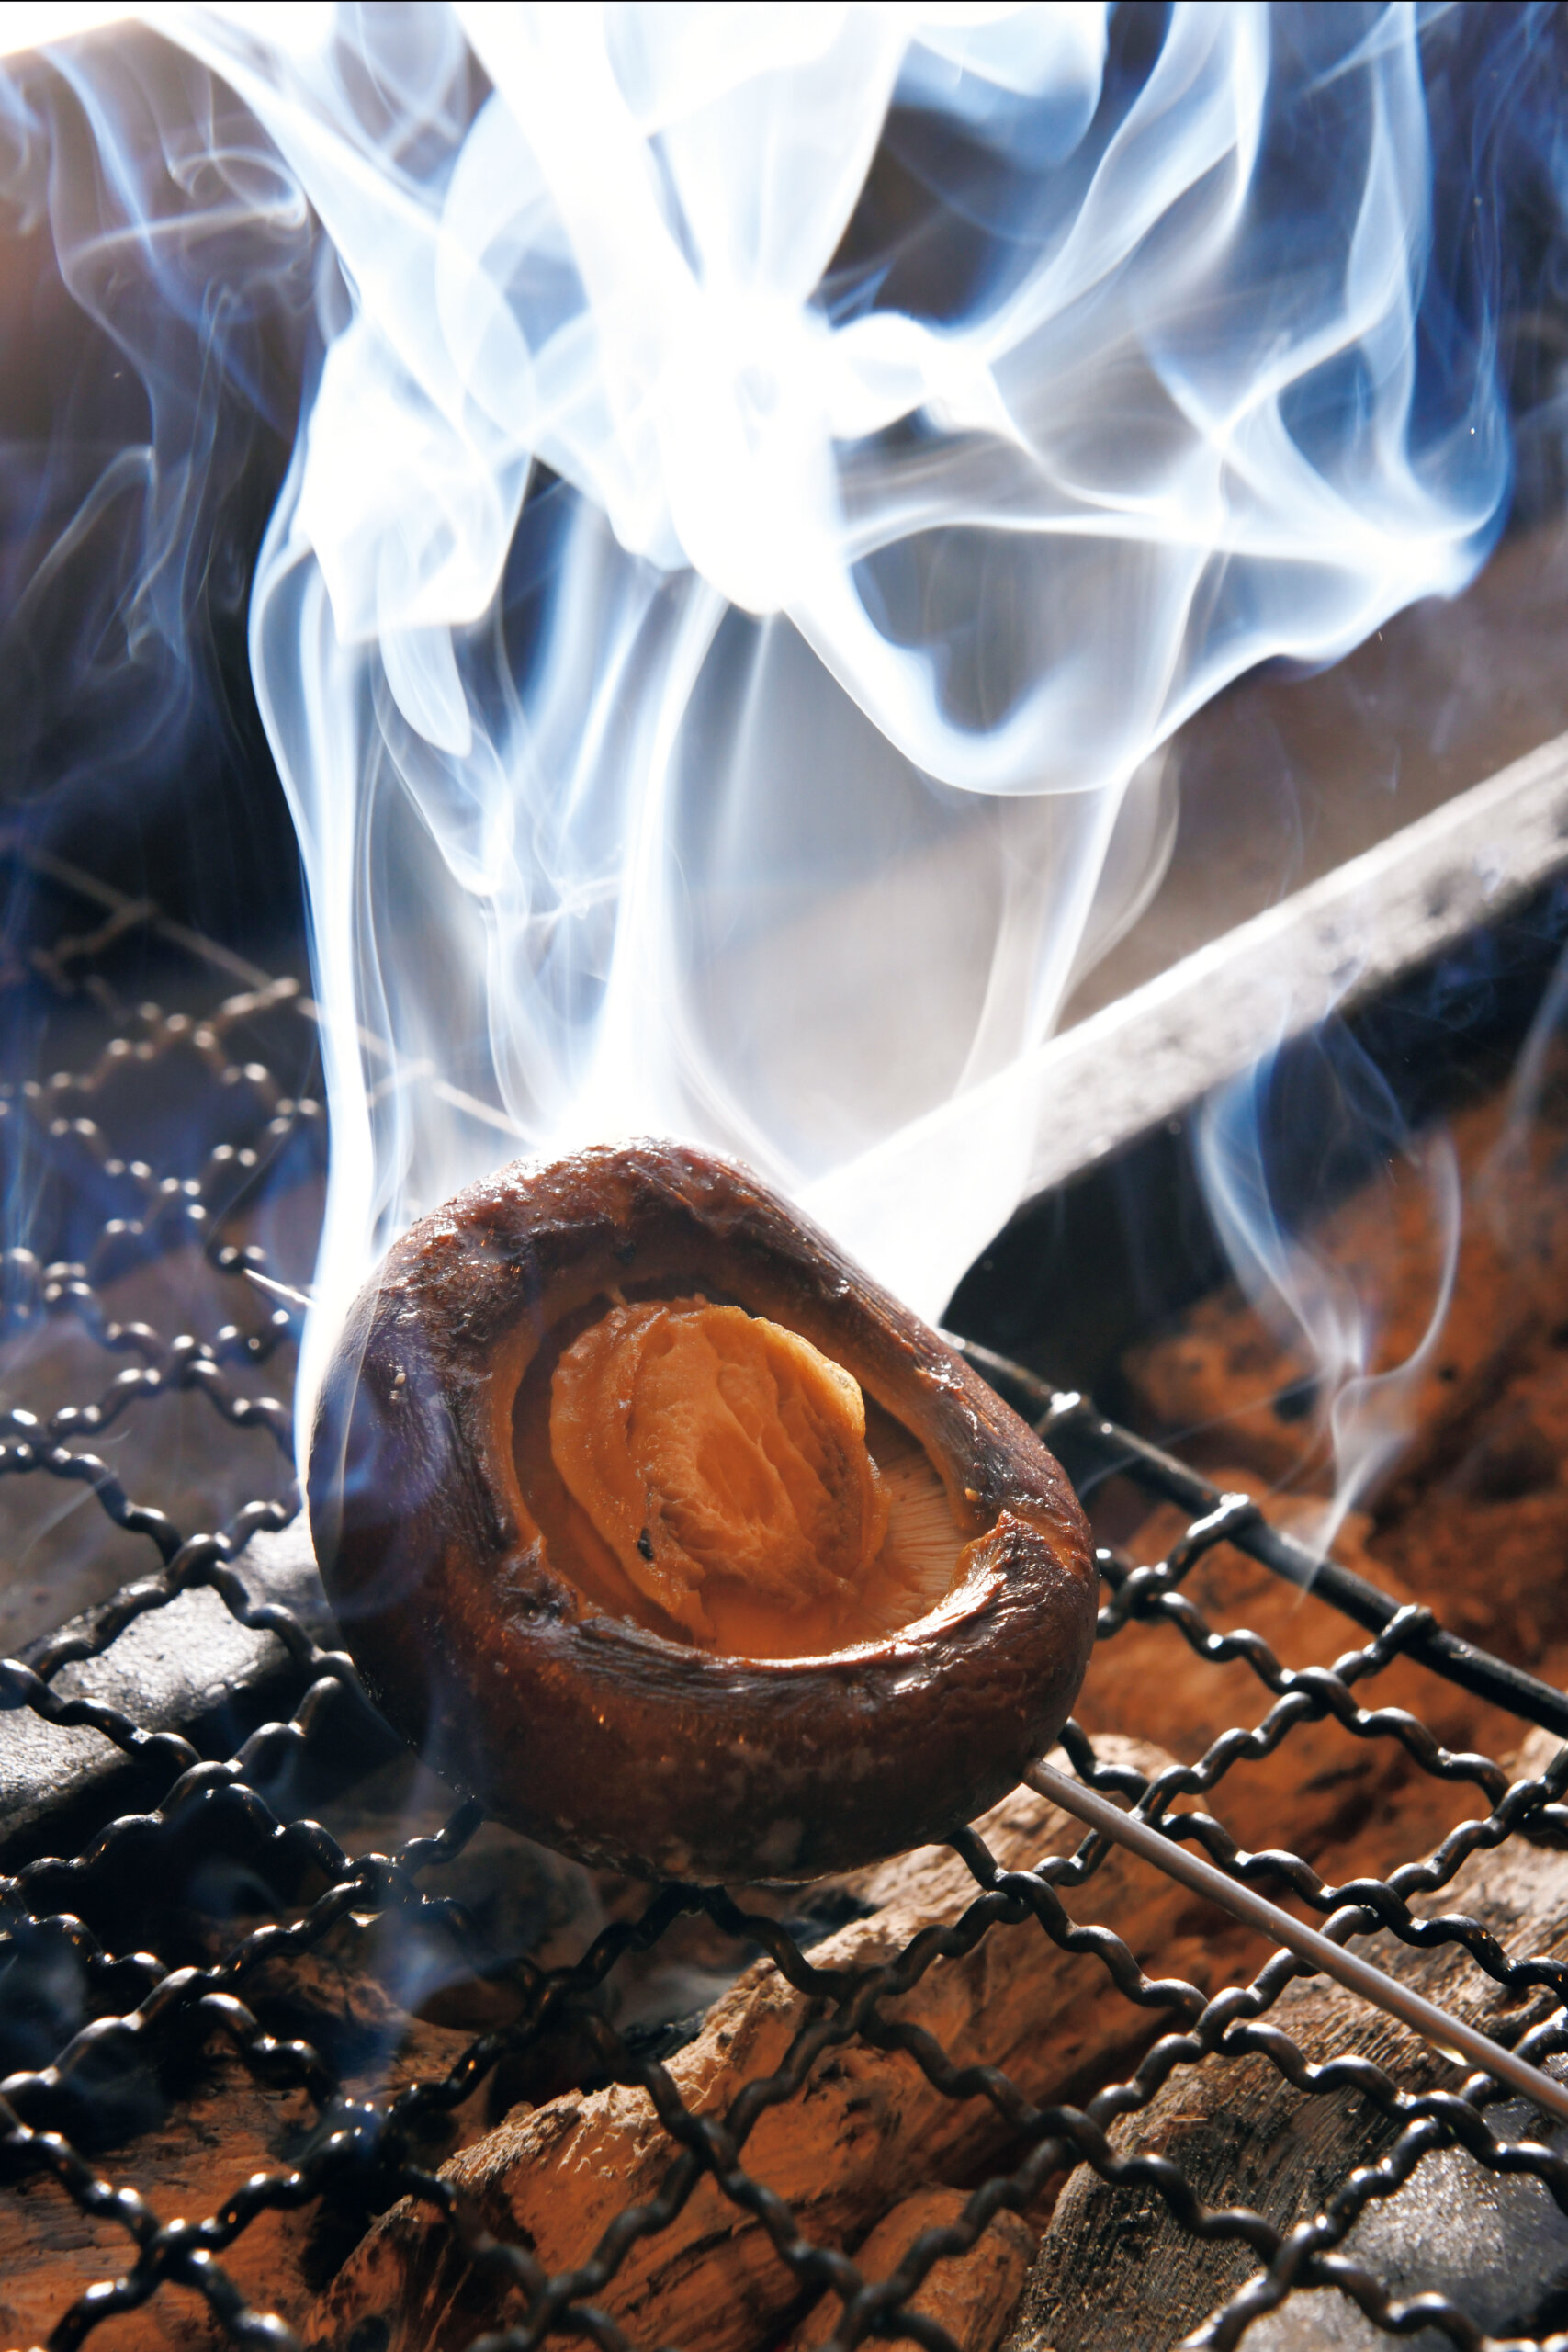 シンプルに炭火焼きしたマッシュルームは、ジューシーで凝縮した風味を堪能できる